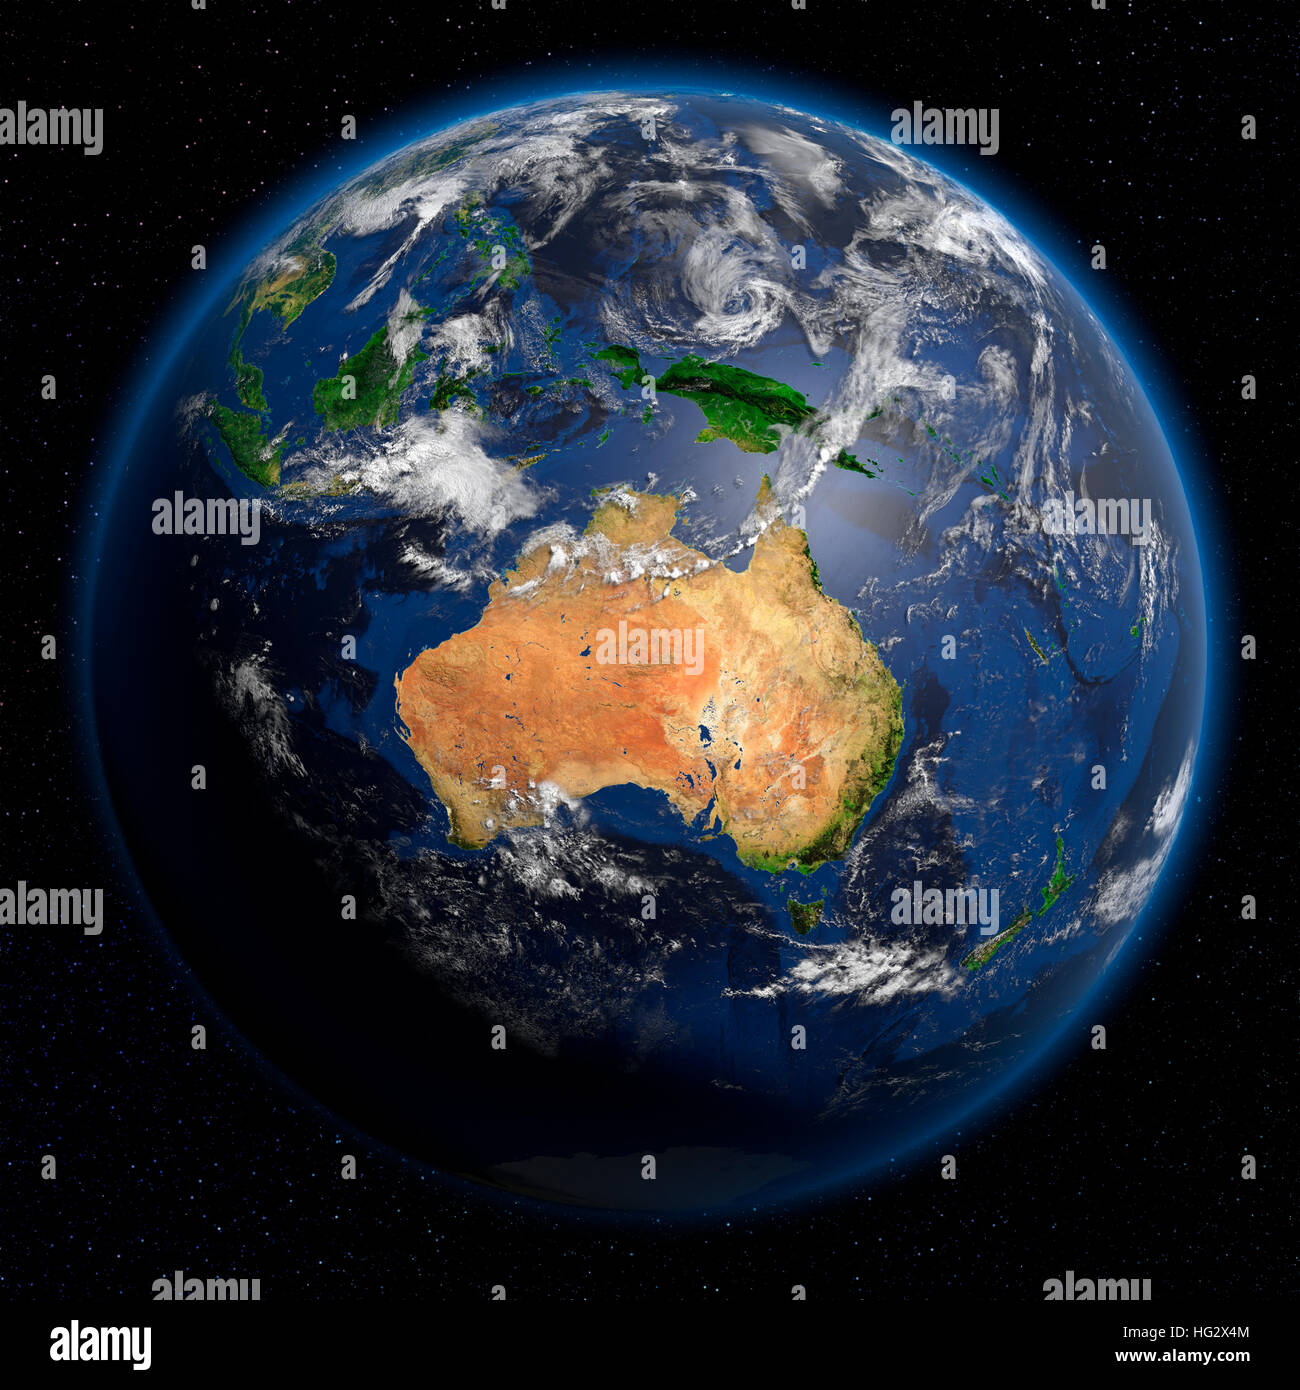 Terre vue de l'espace montrant l'Asie du Sud Est. Illustration numérique réaliste y compris carte relief hill d'une ombre de terrain. Veuillez crédit Nasa. Banque D'Images